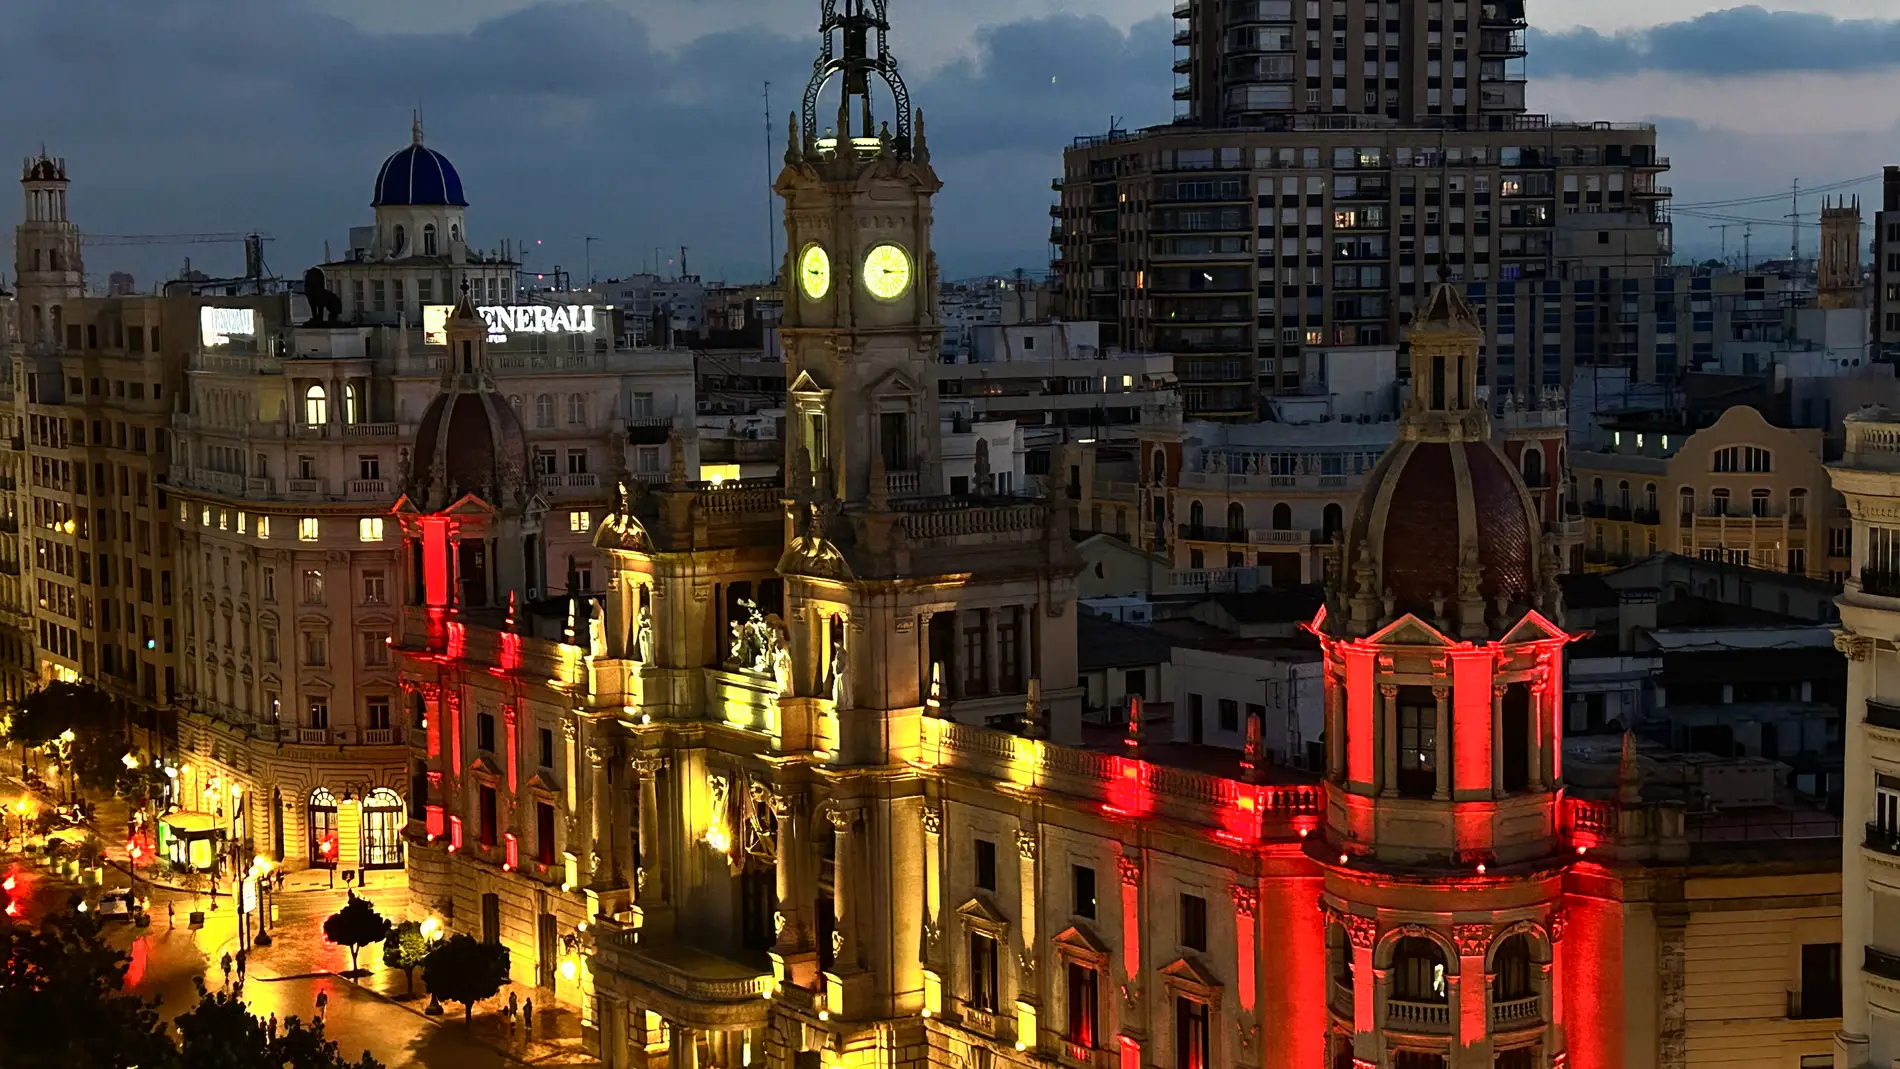 El Ayuntamiento de Valencia se ilumina para celebrar el Mundial